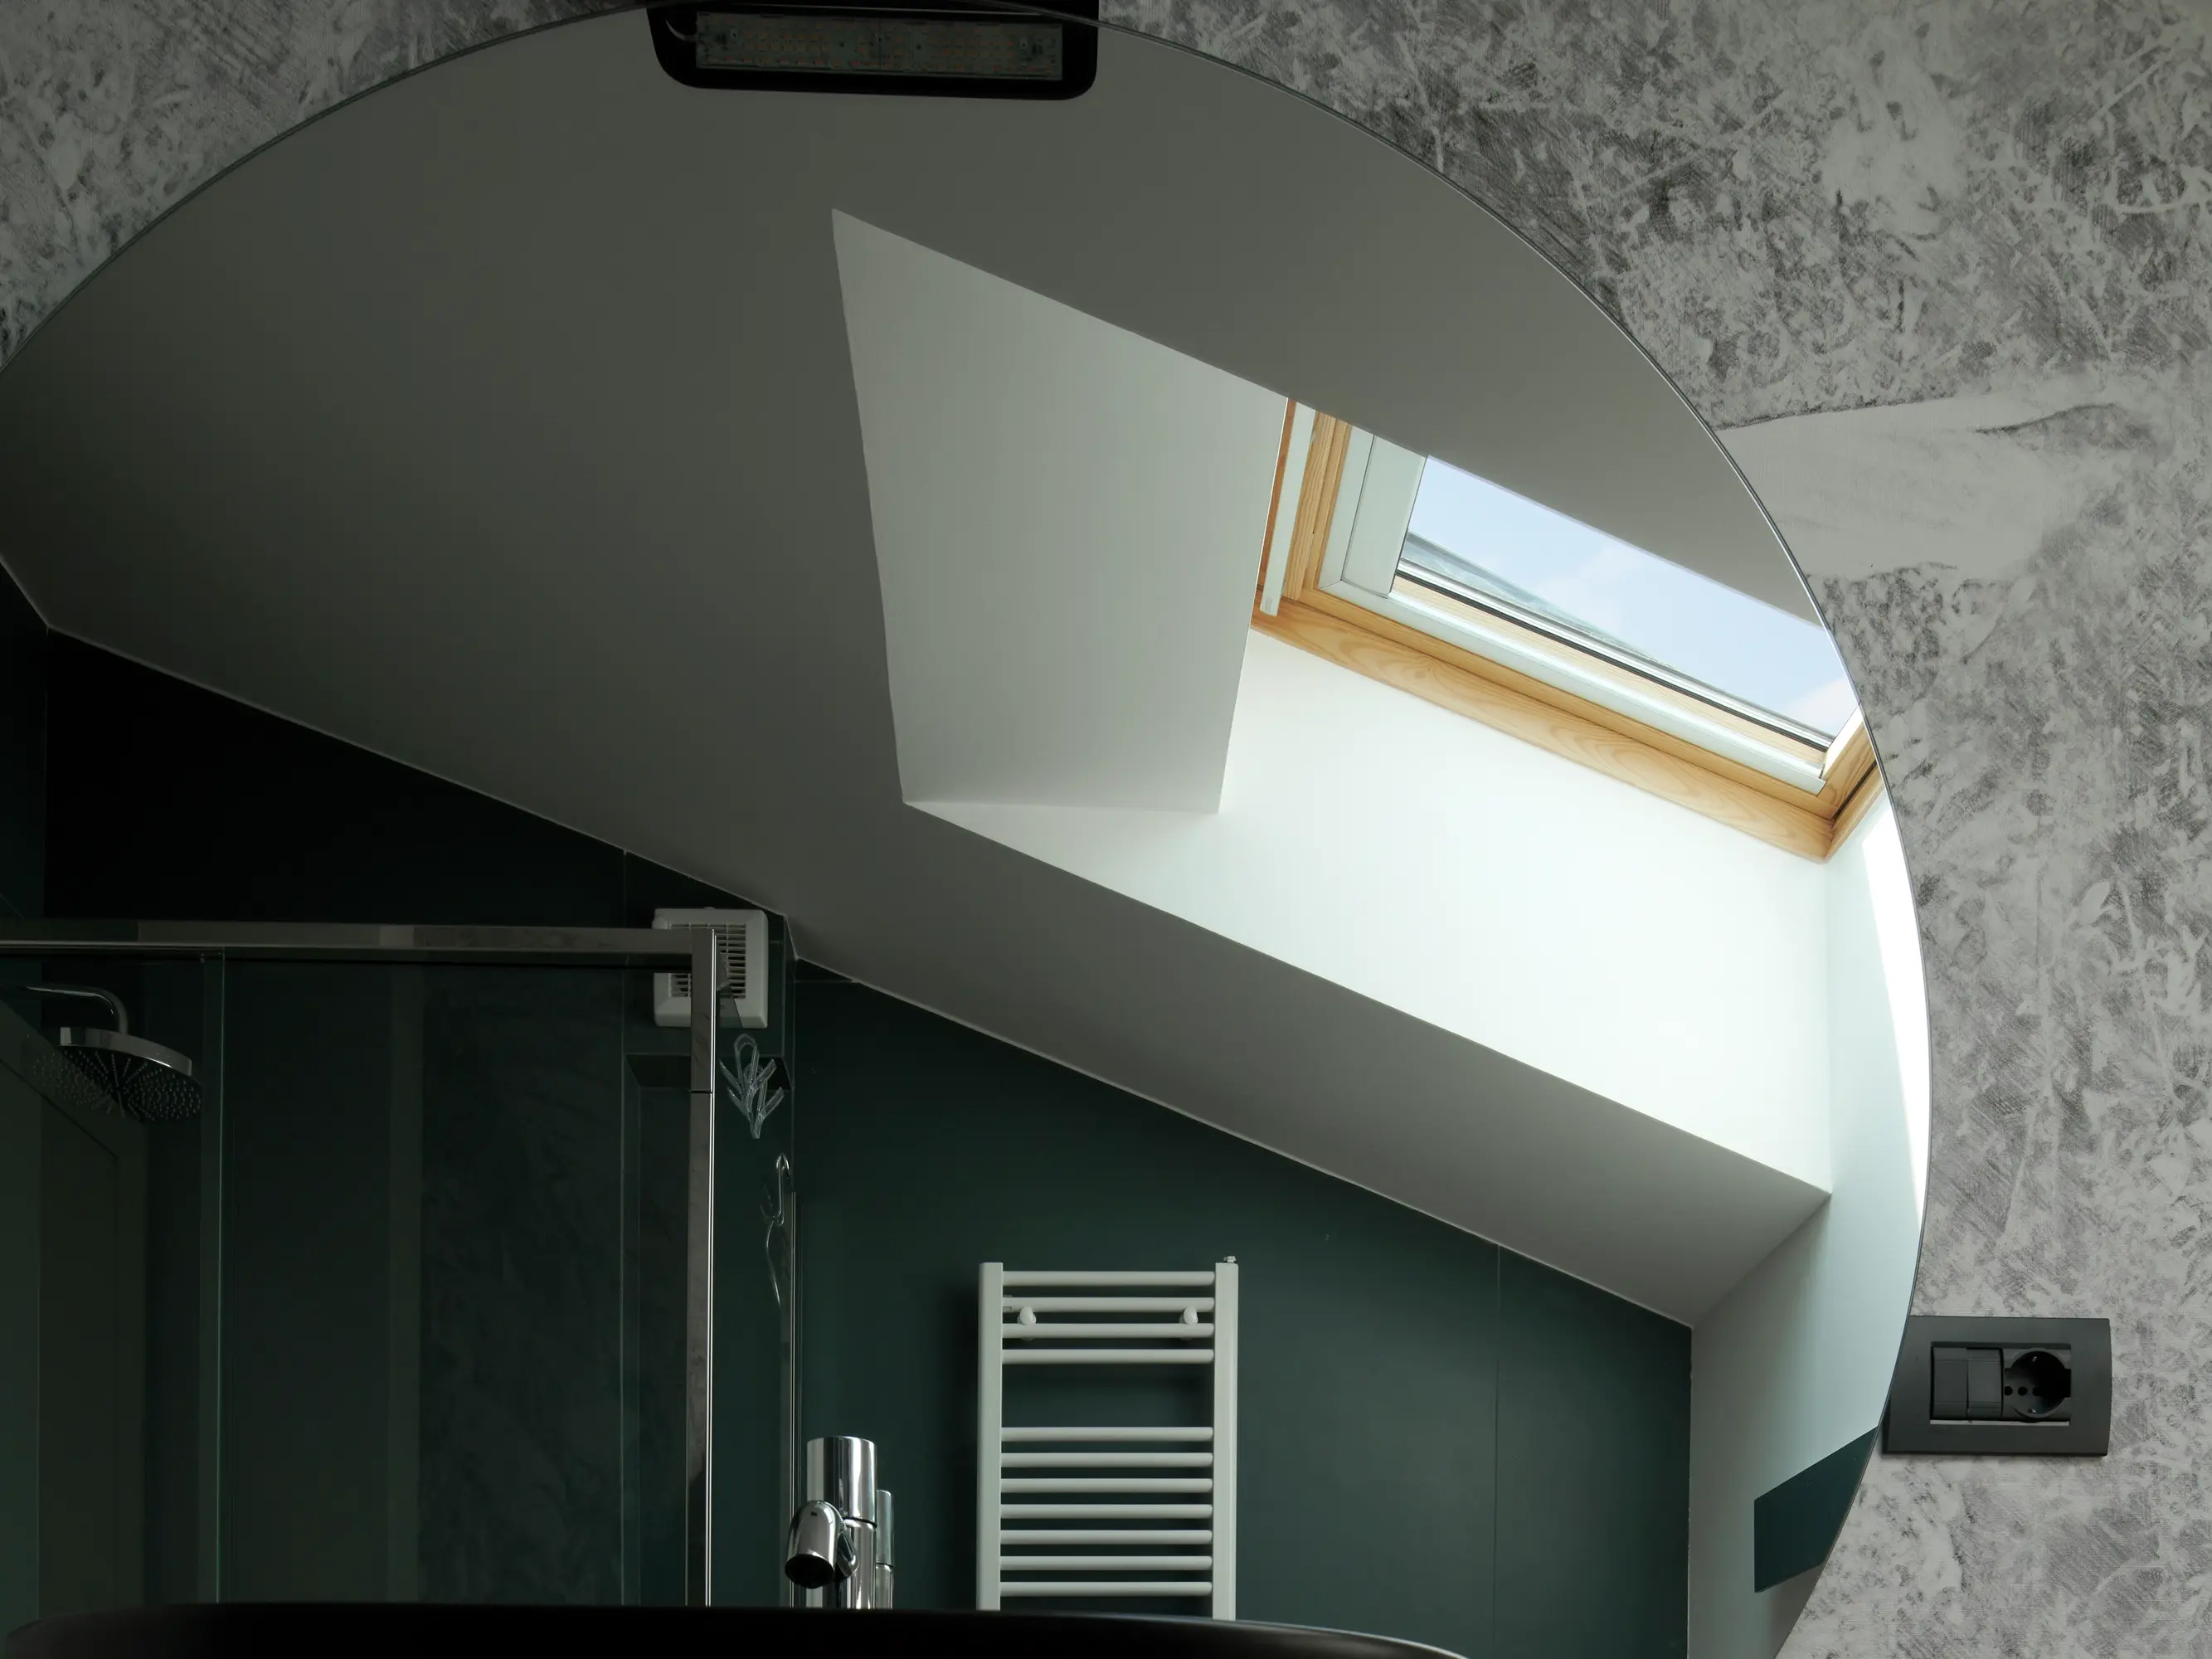 Salle de bain moderne avec un lavabo noir ovale sur un plan de travail en bois, entourée de murs aux textures contrastées et éclairée par des fenêtres de toit assurant une isolation efficace.